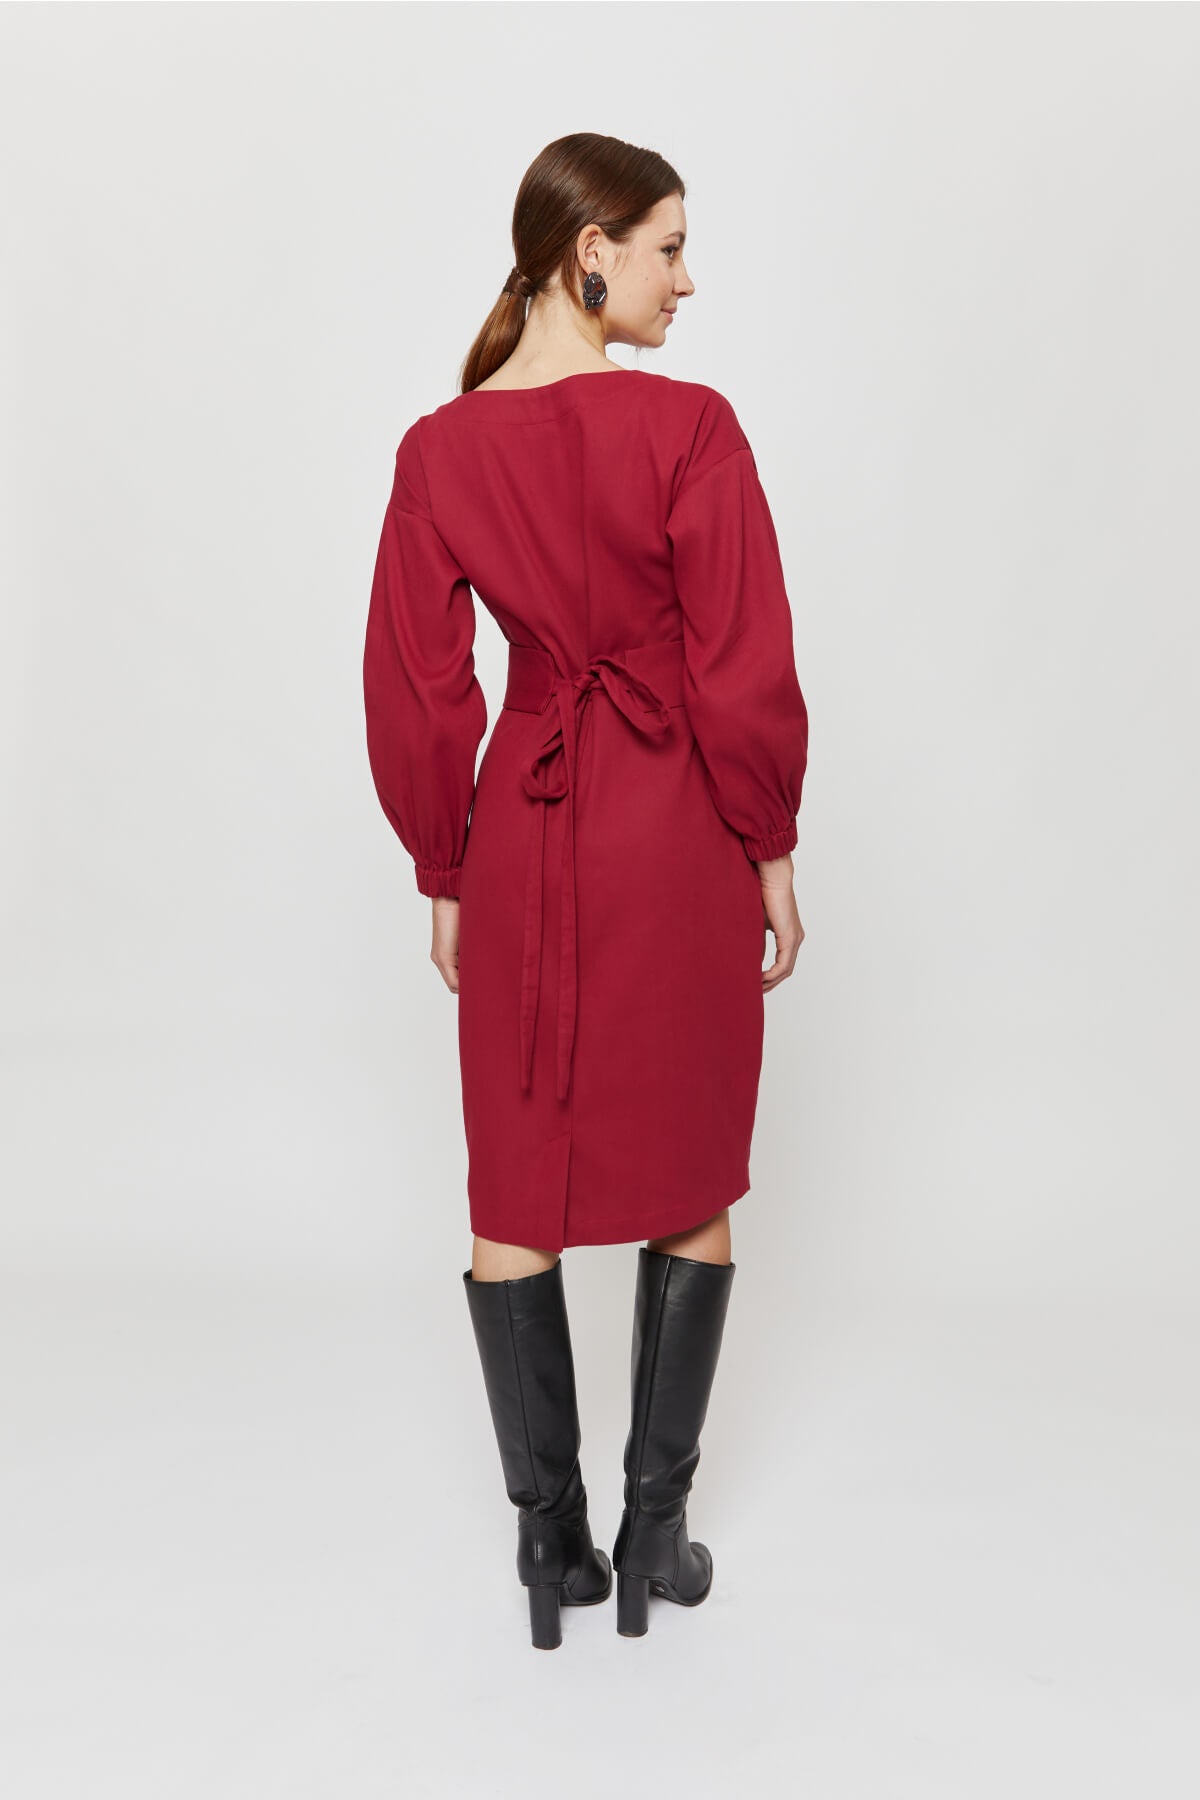 Stefanie | Dress with Kimono Belt in Red-Bordo